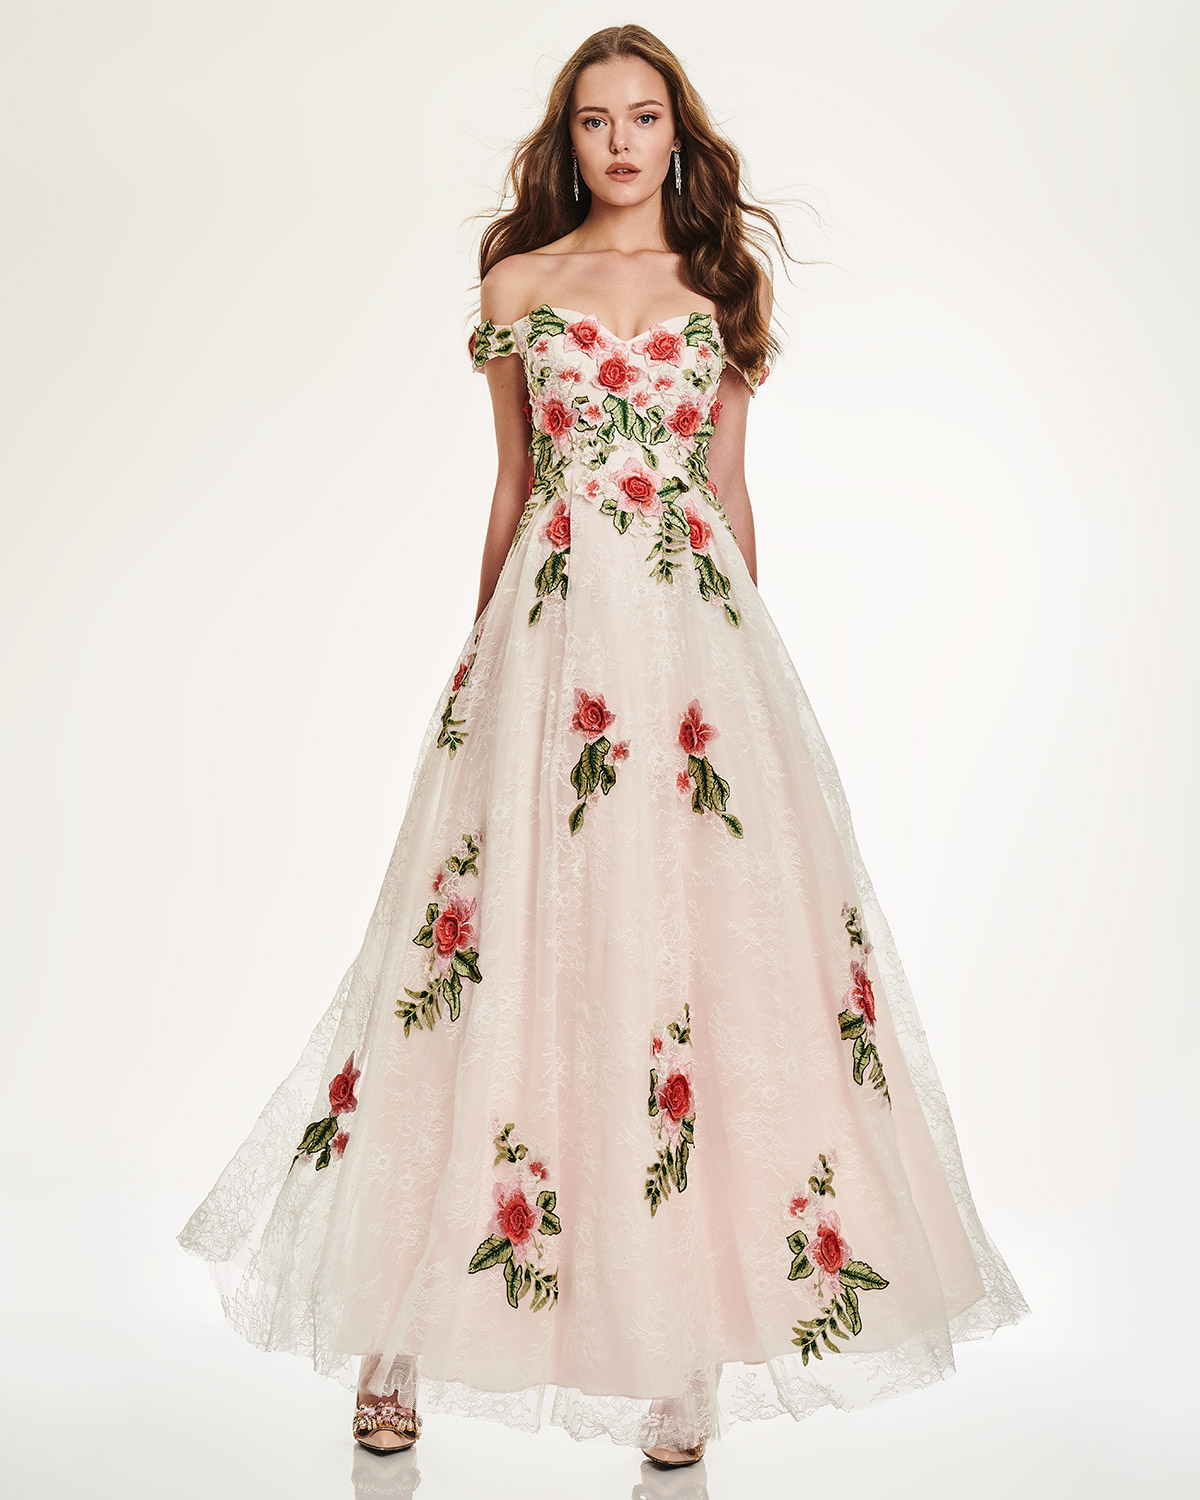 Cocktail Dresses / Long lace dress with applique flowers